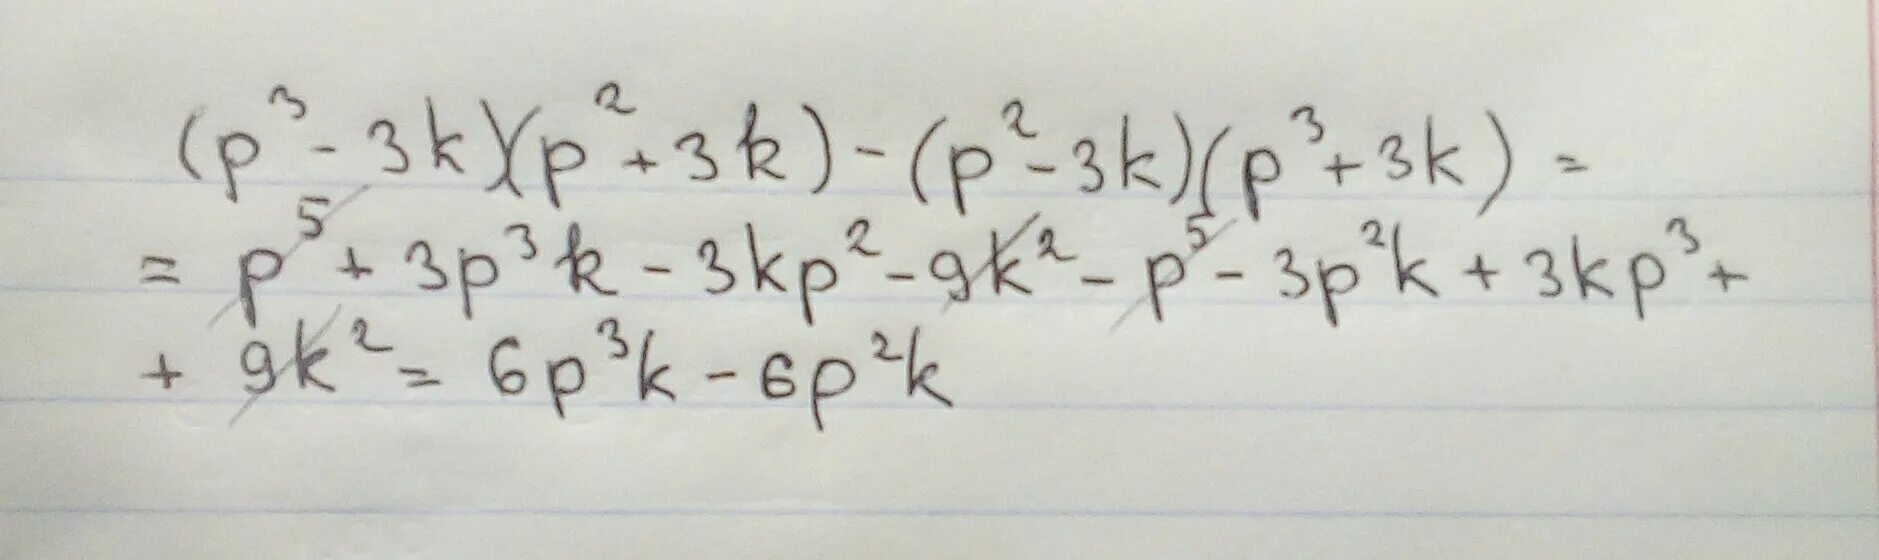 Упростите выражение п 2 а. Упрости выражение p+3/p 2-2p. Упрости выражение p-2r2c3 -3. Упростите выражение p3-3k p2+3k p2-3k p3+3k. Упрости выражения p11 2 p3 5.